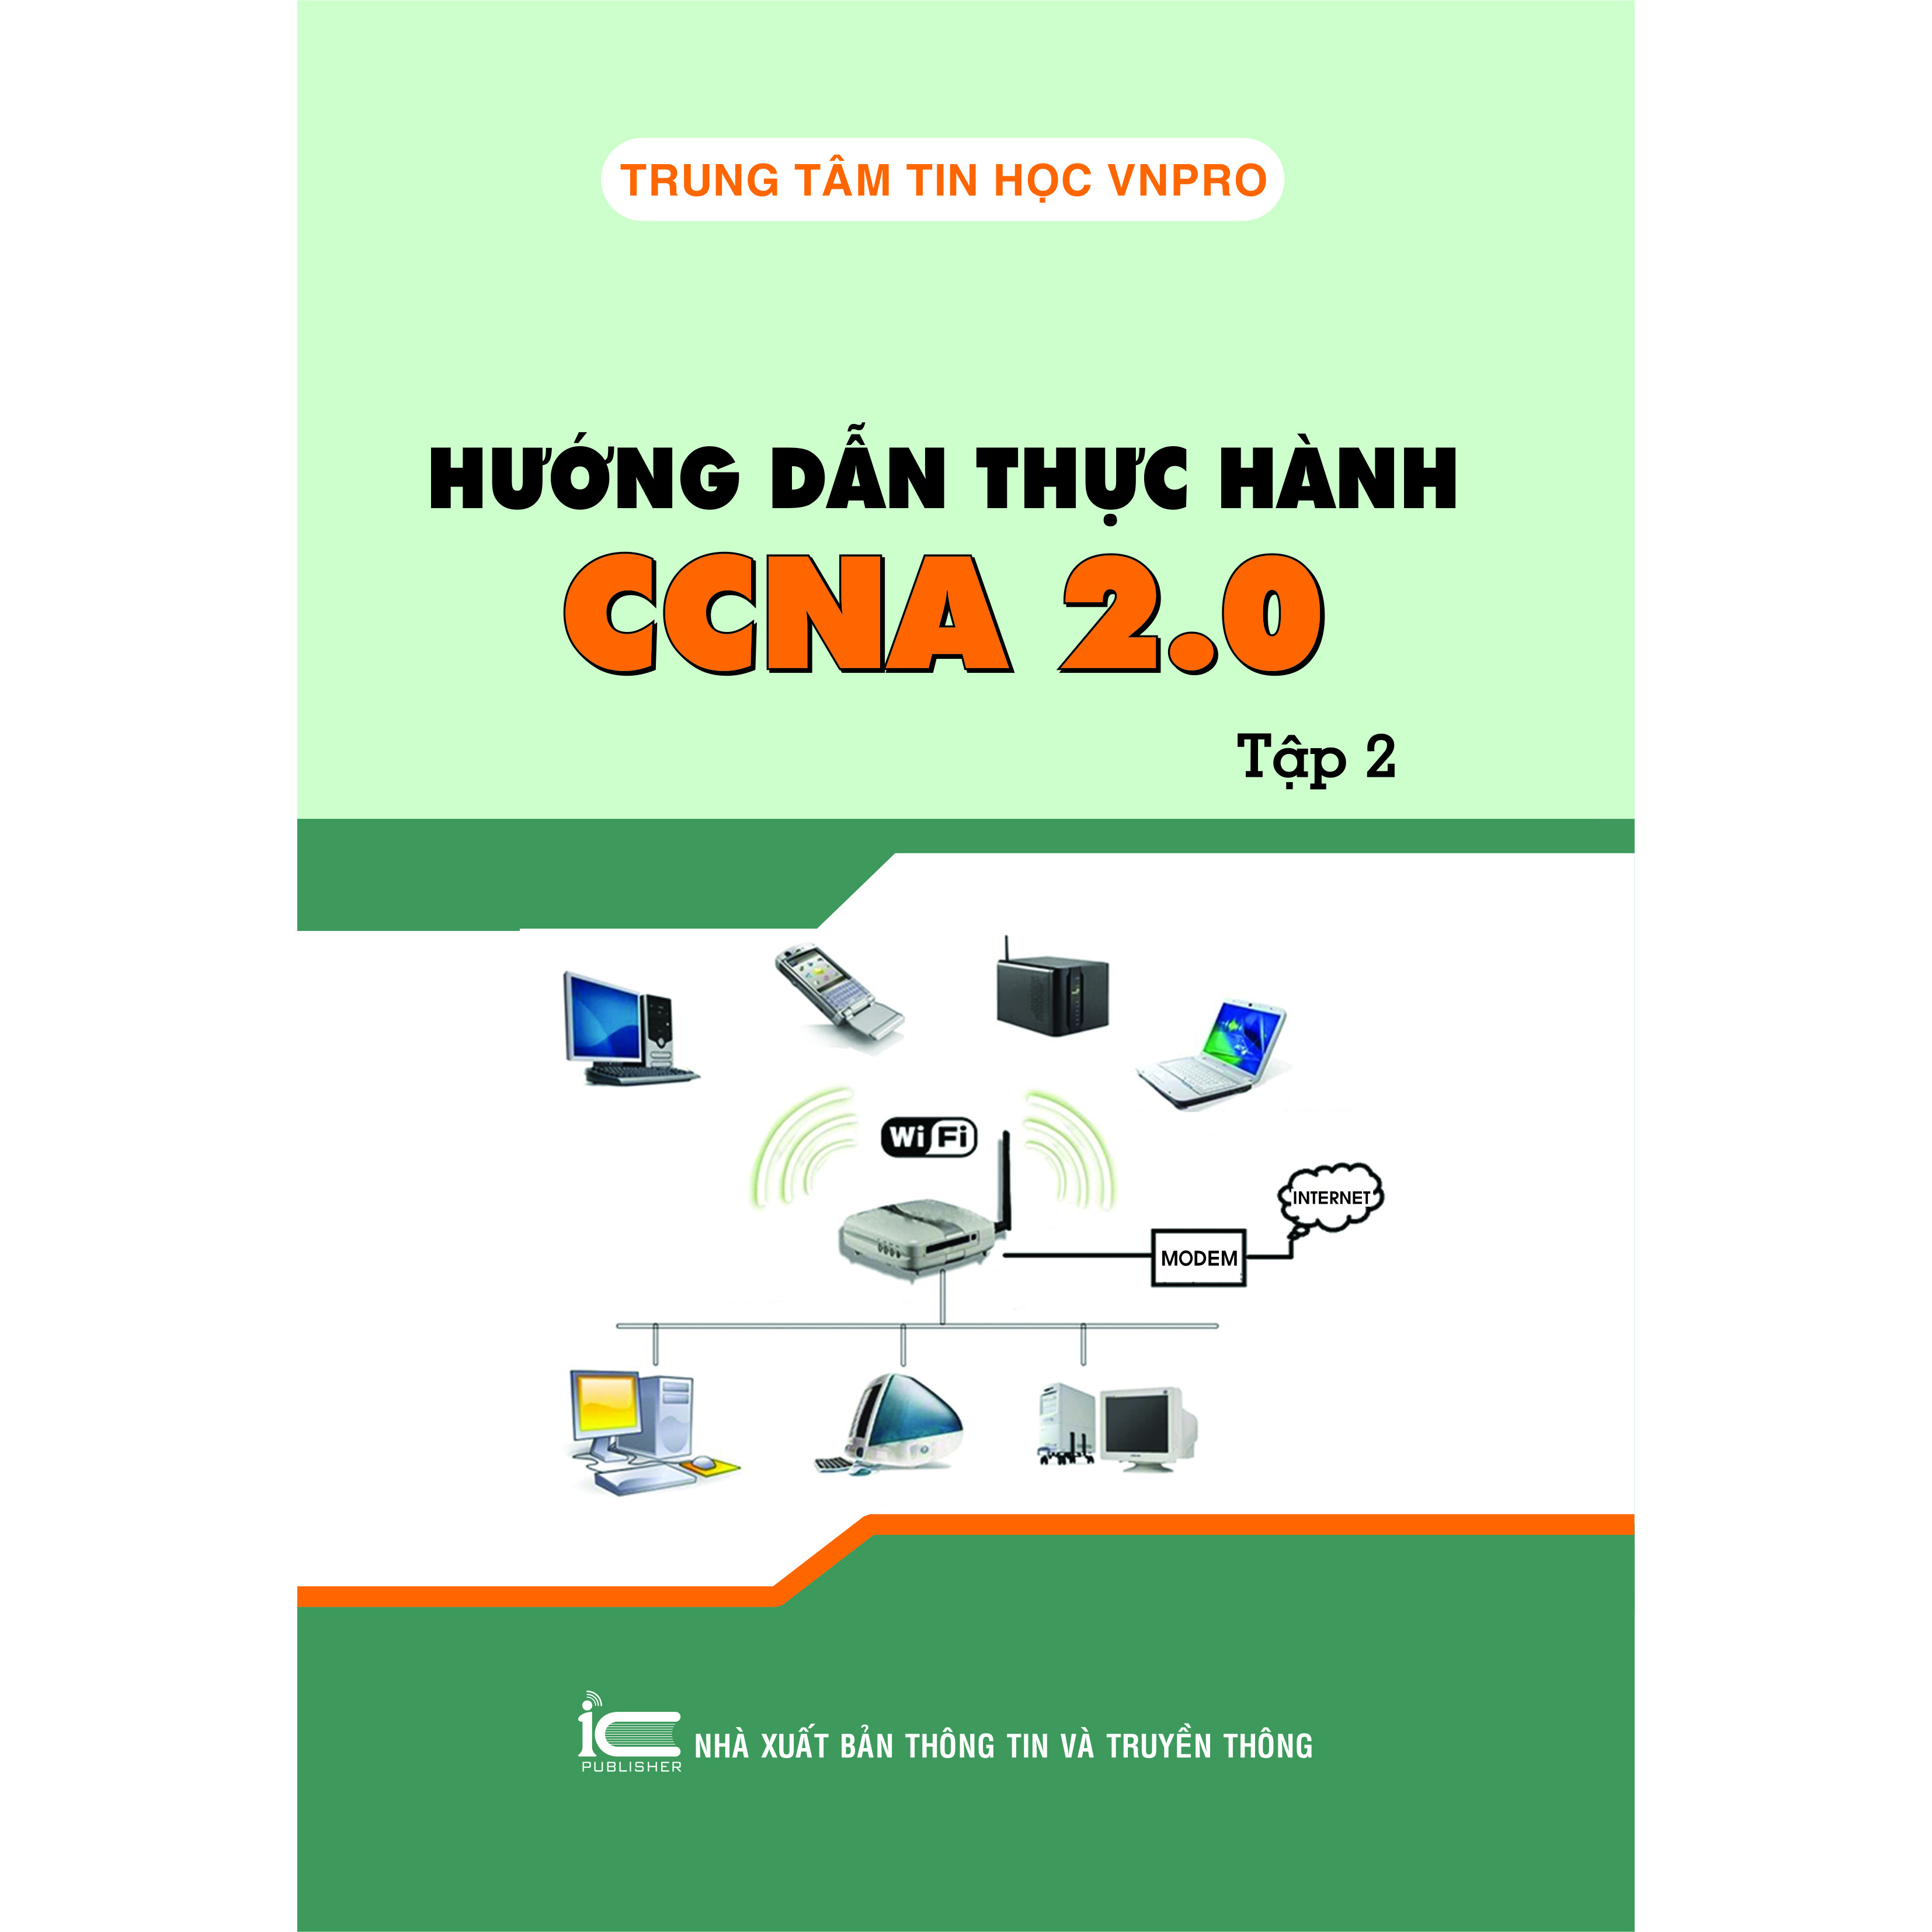 Hướng dẫn thực hành CCNA 2.0